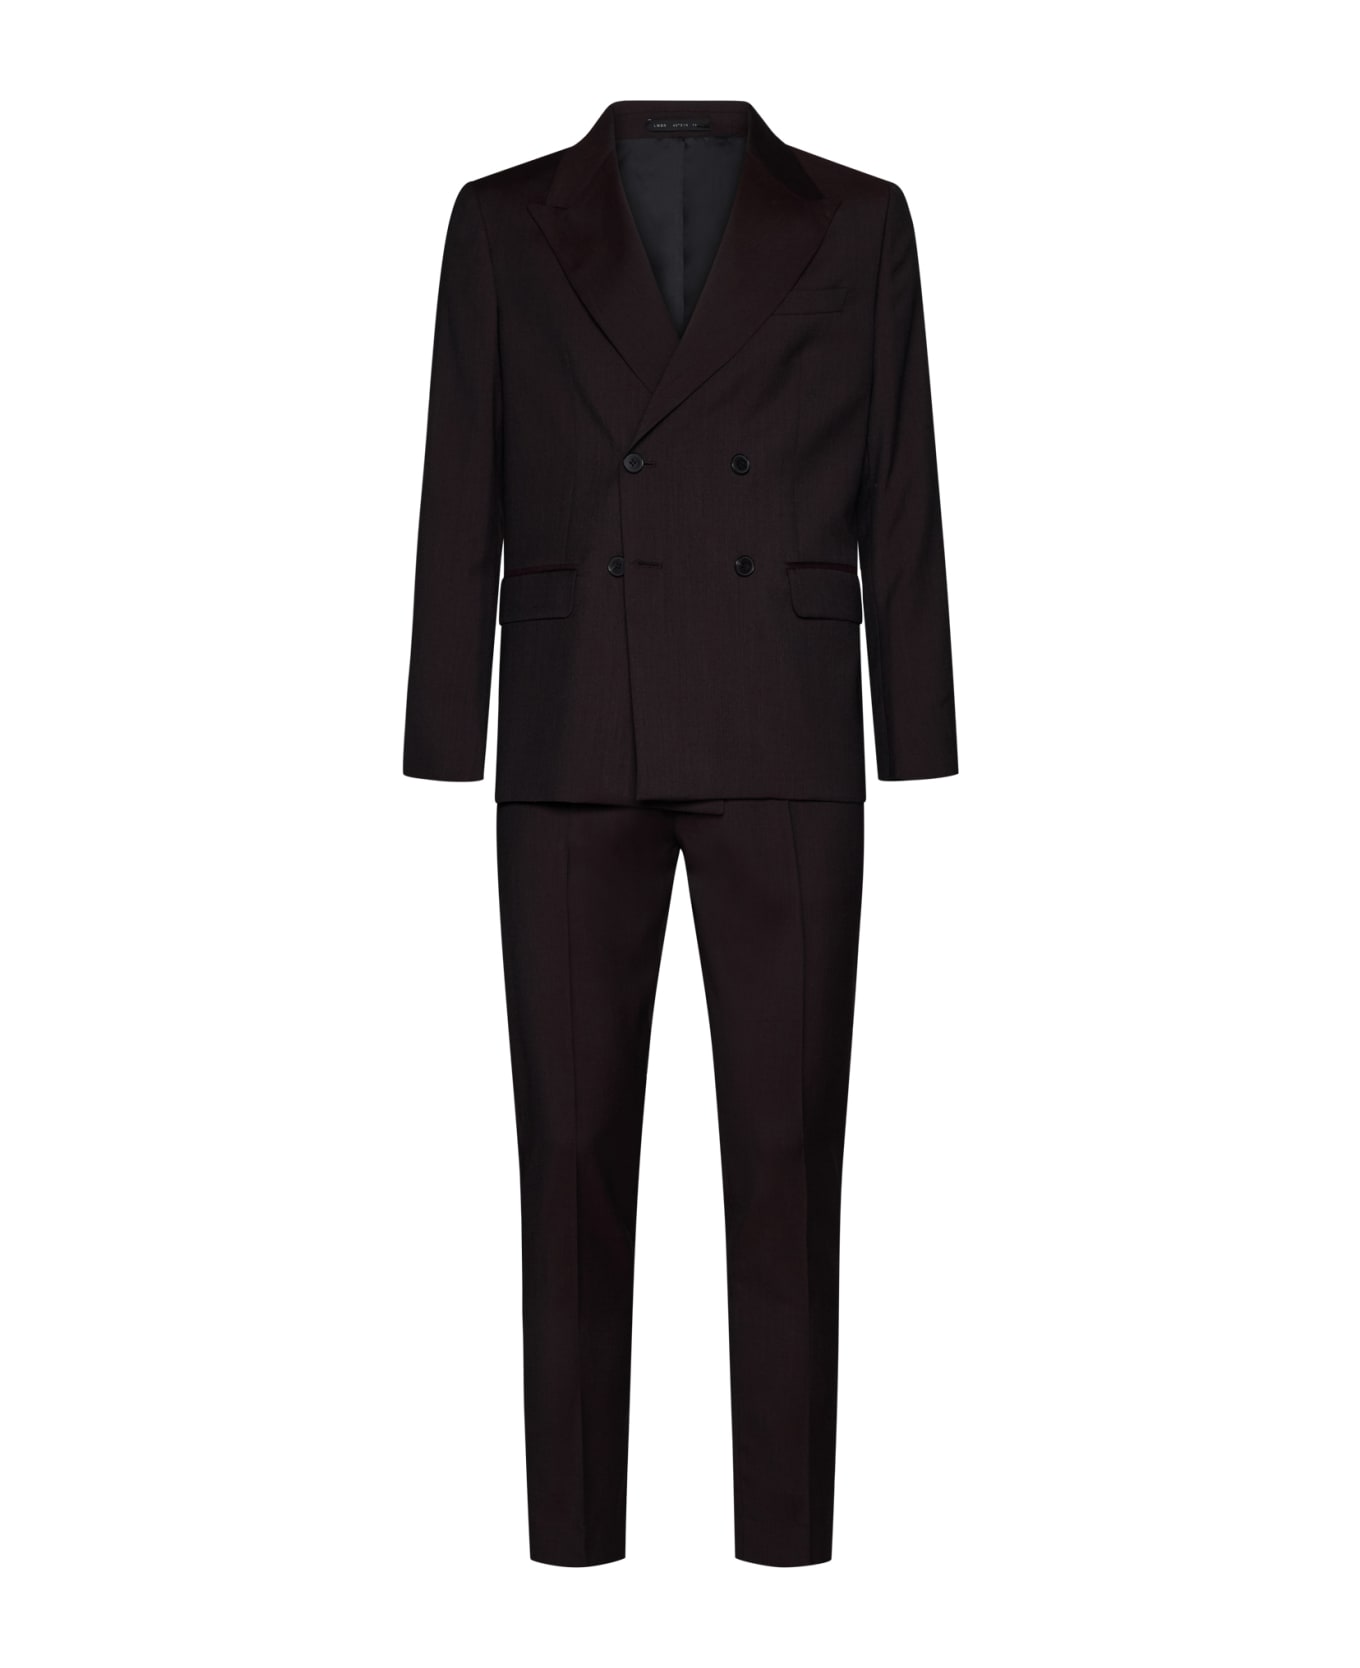 Low Brand Suit - Black rum スーツ